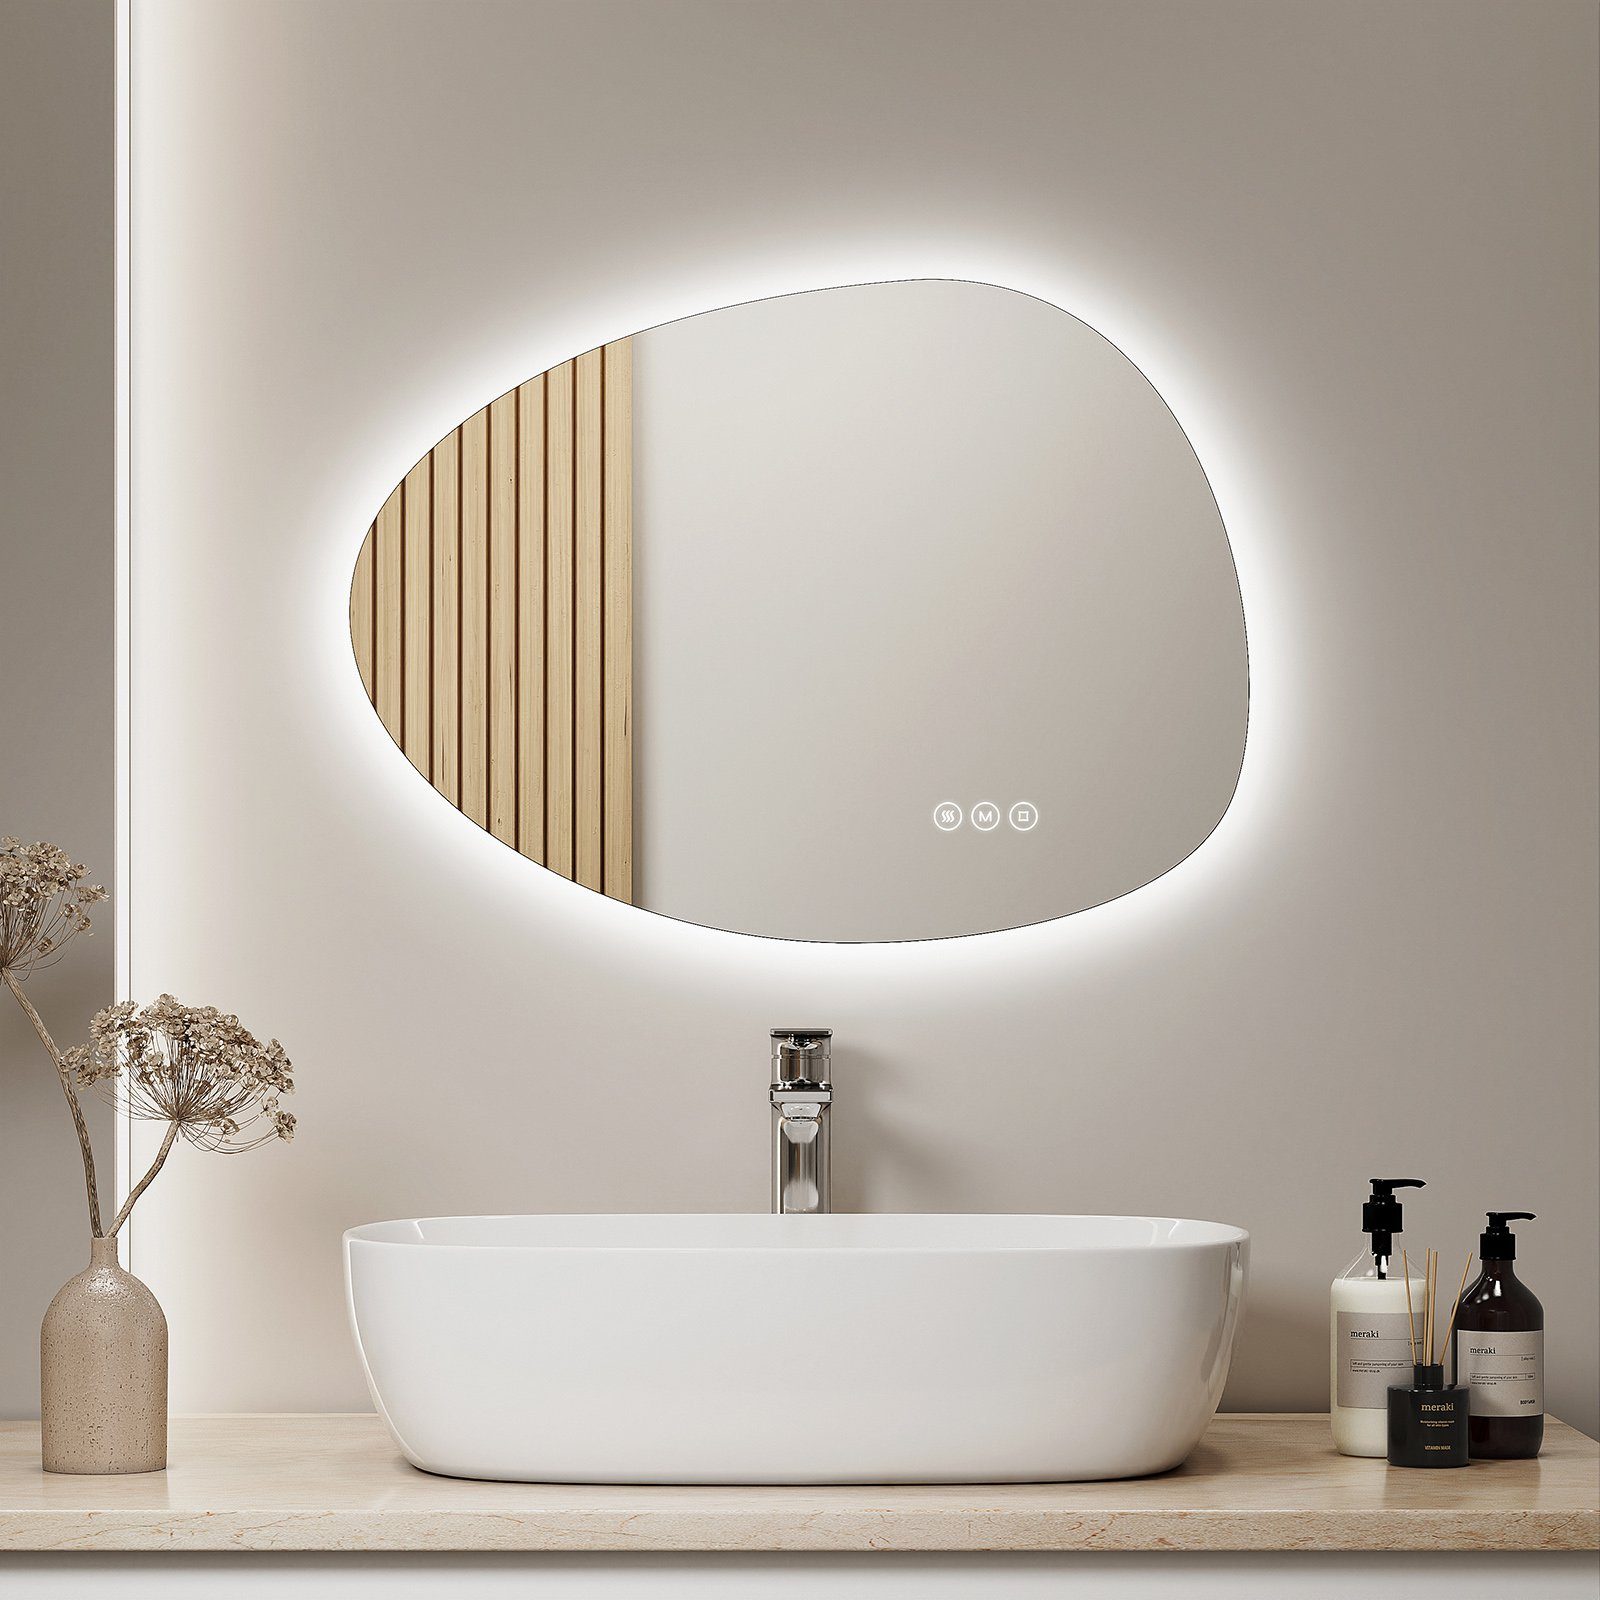 3 LED mit Anti-Beschlag- und Dimmbar, Lichtfarben Wandspiegel Badspiegel Beleuchtung und Memory-Funktion S'AFIELINA